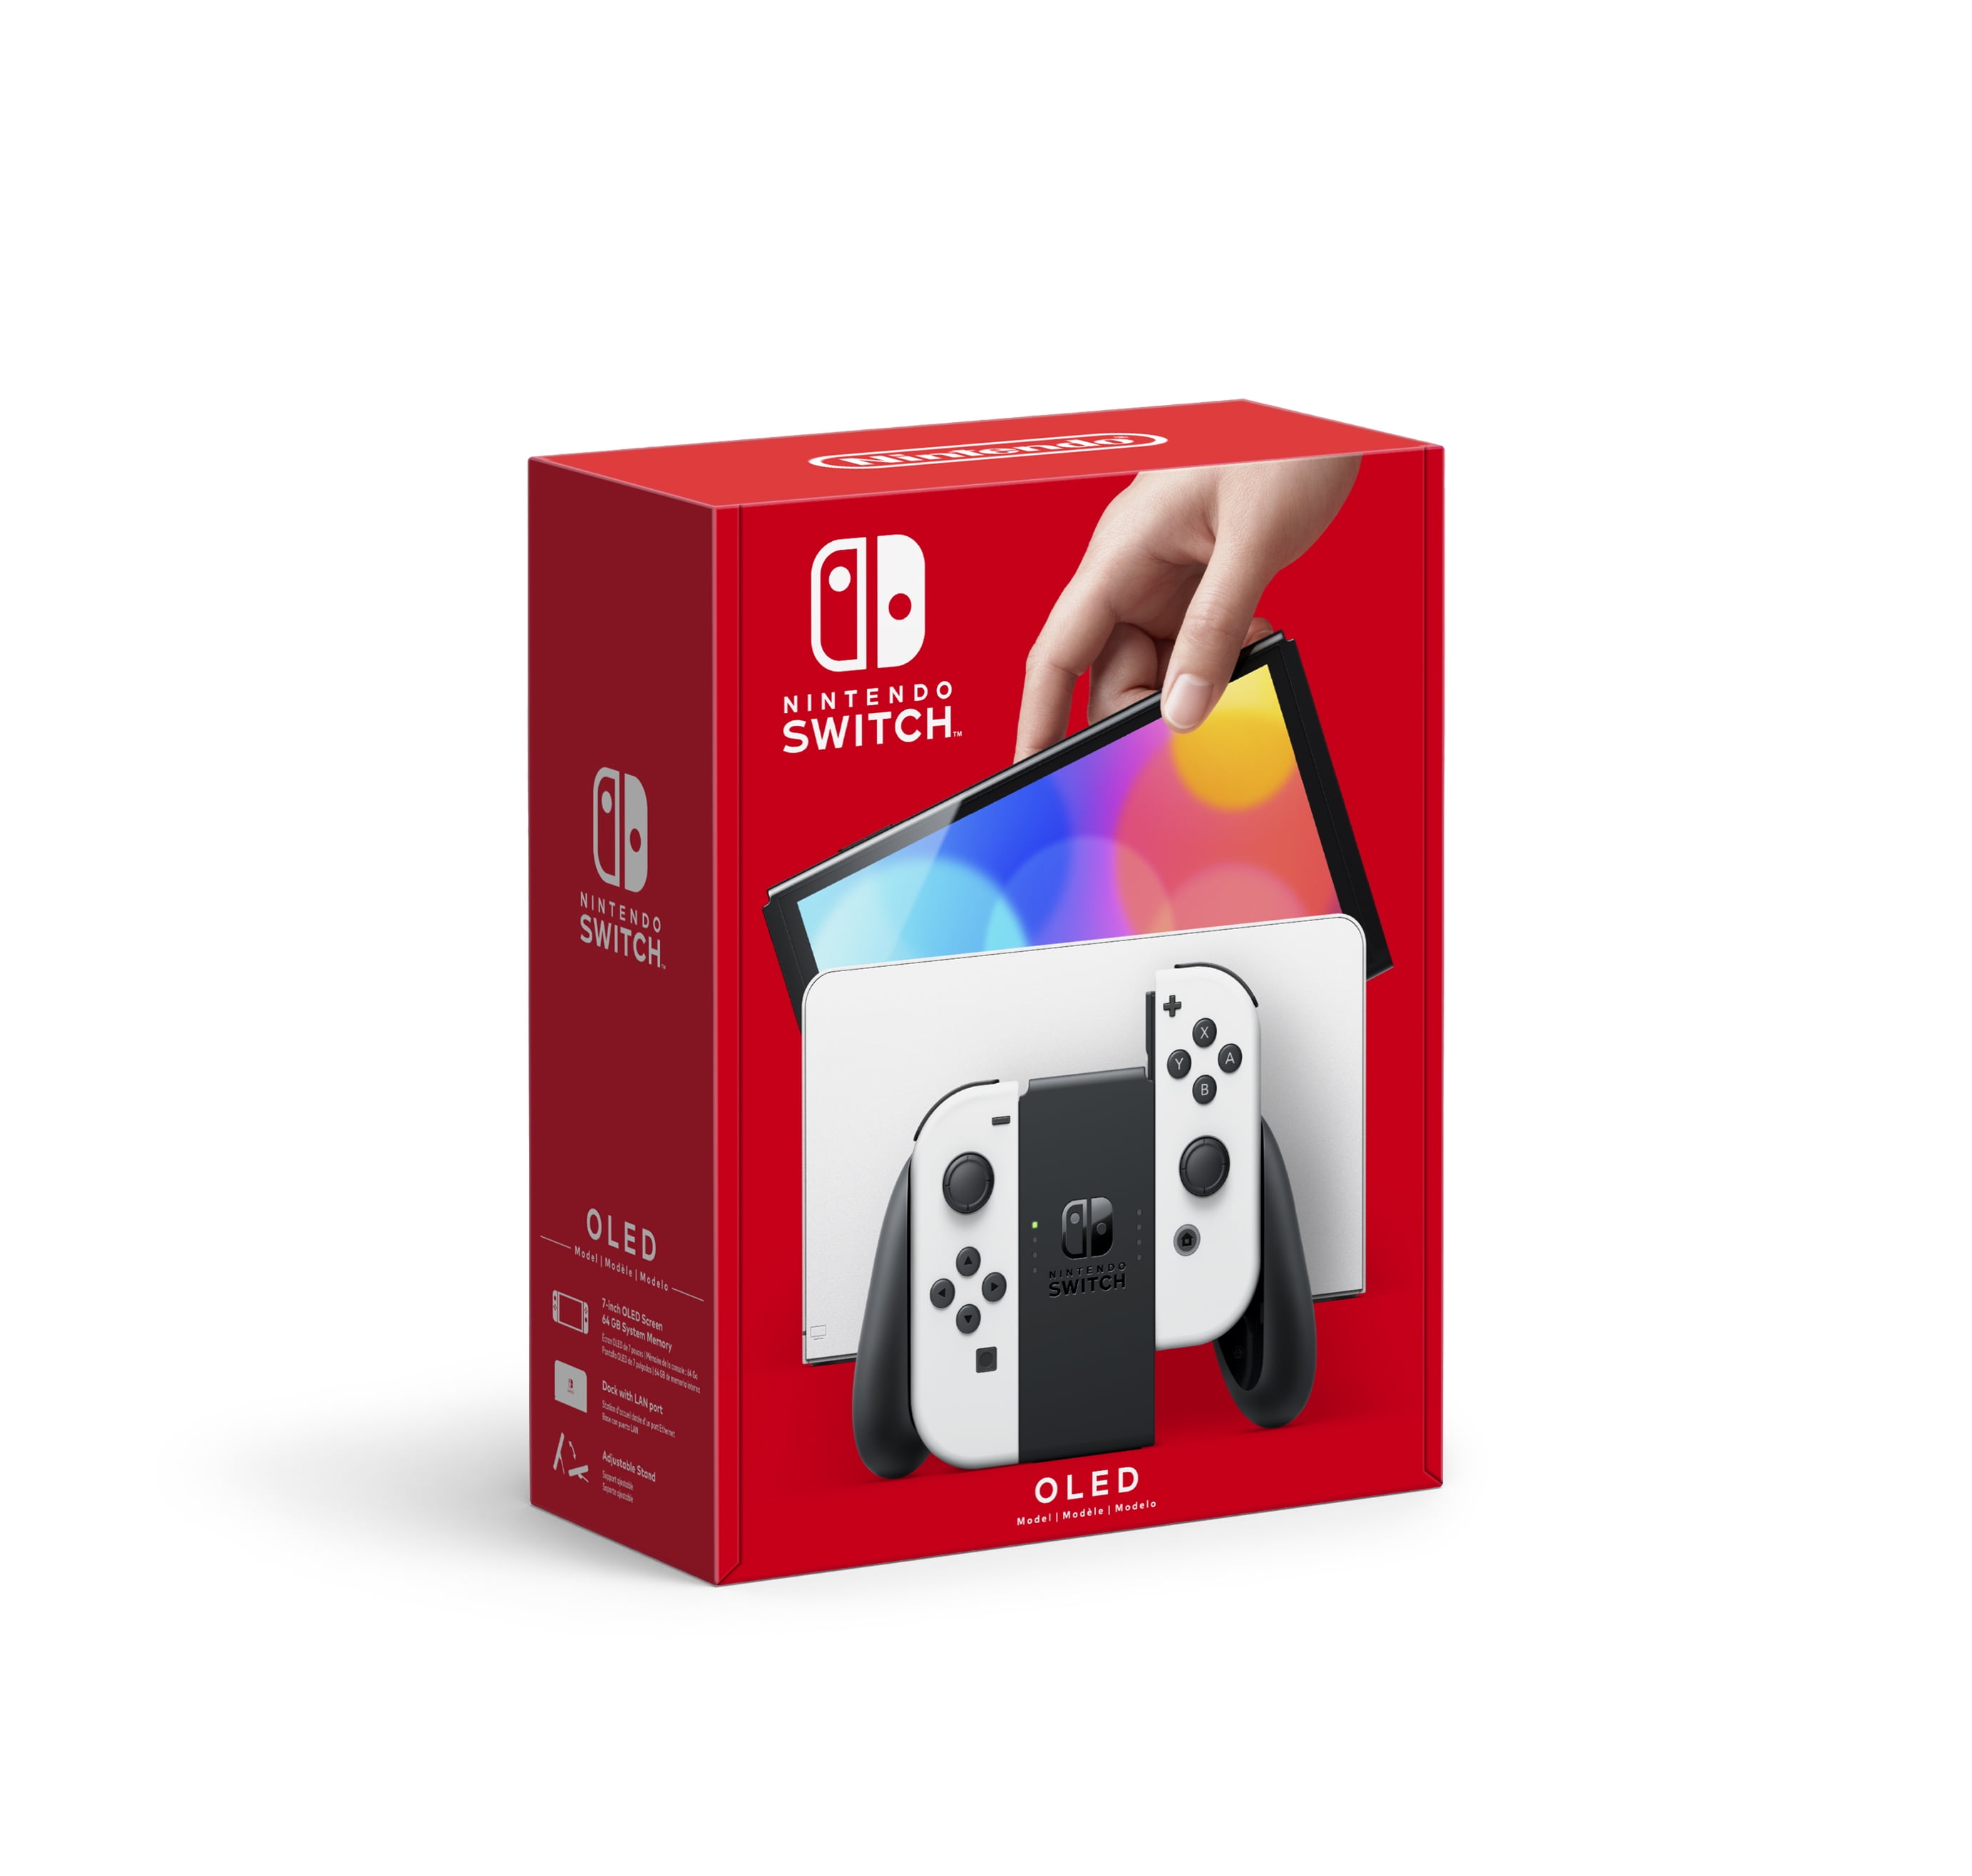 Medieval Ceder el paso posición Nintendo Switch™ – OLED Model w/ White Joy-Con™ - Walmart.com